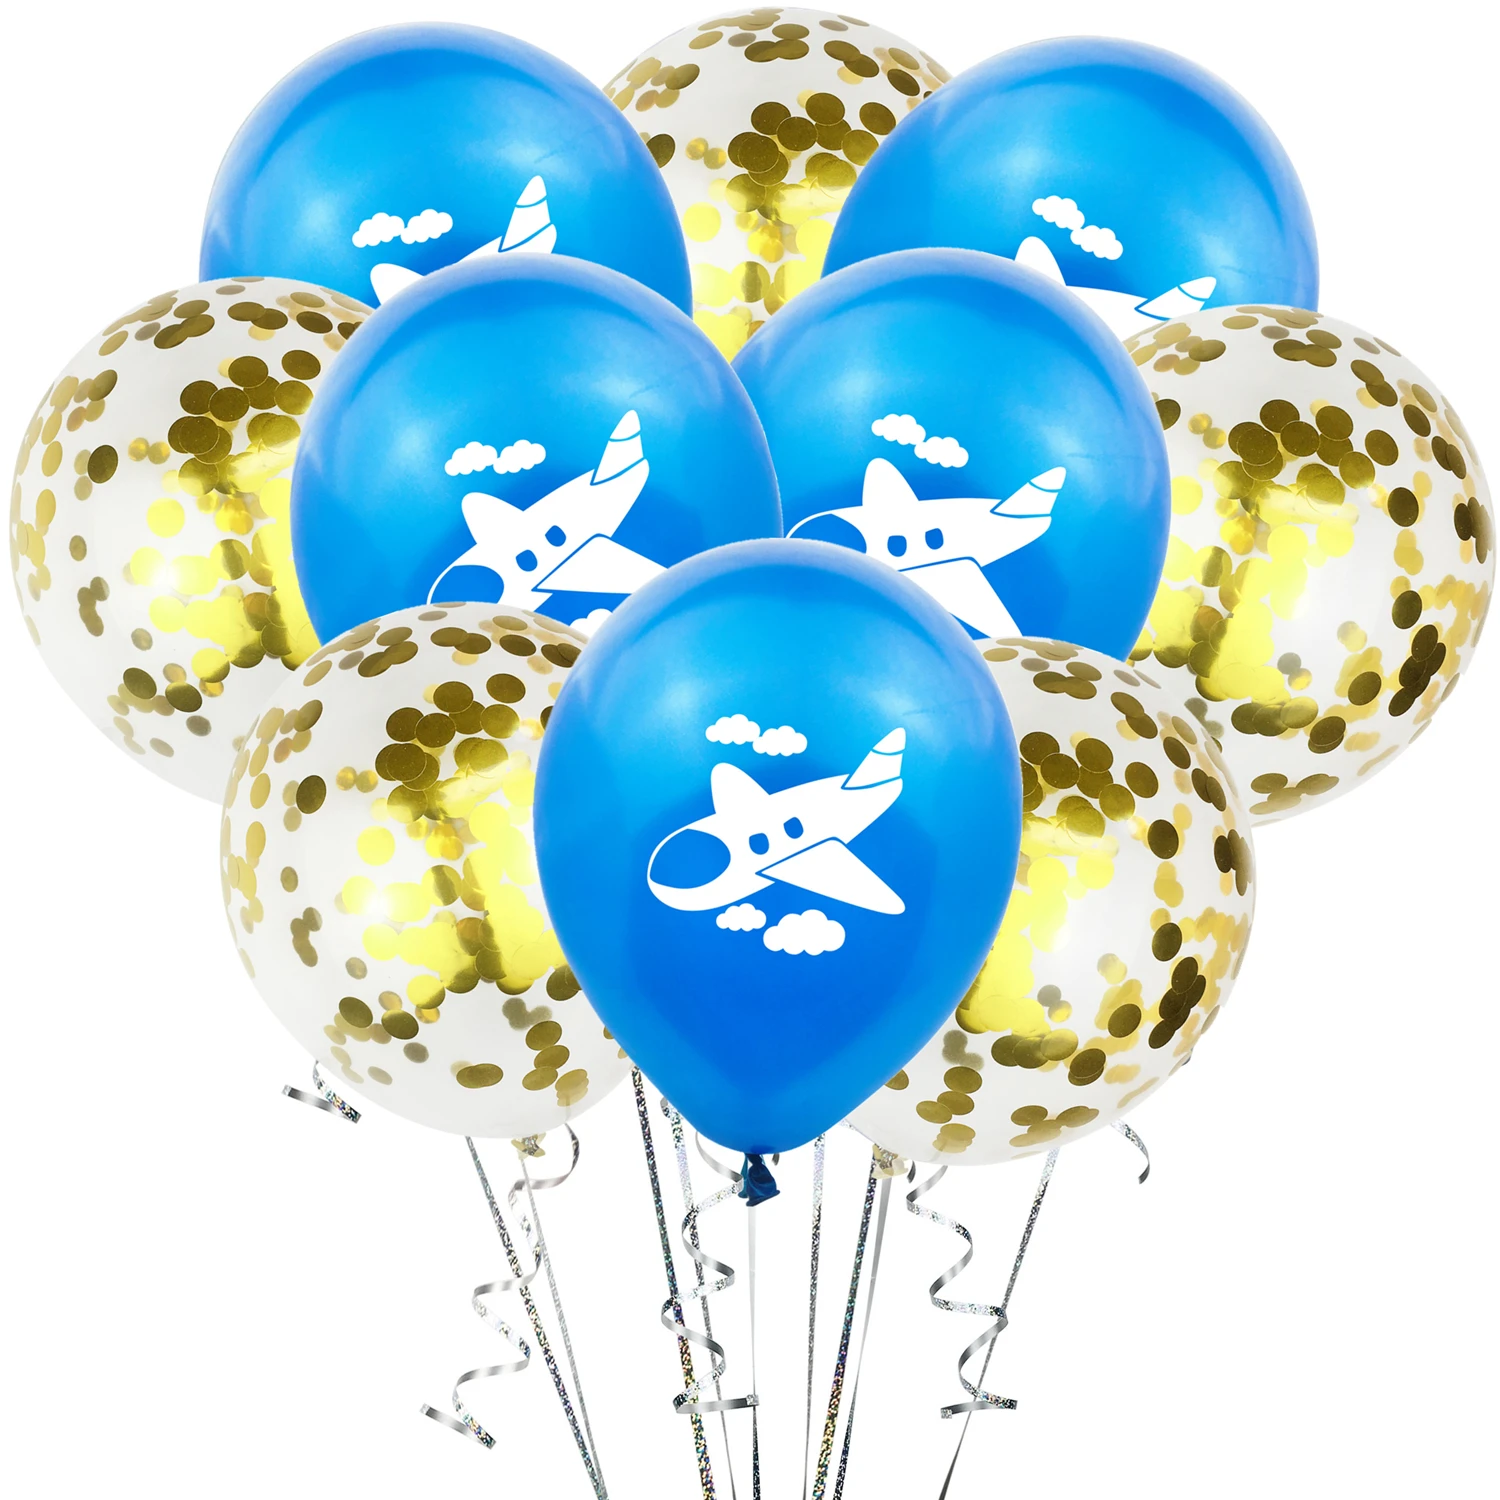 ZLJQ Frist день рождения самолет вечерние воздушные шары 10 шт. 12 дюймов латексный шар для украшения дня рождения детский воздушный шар для мальчика баллон